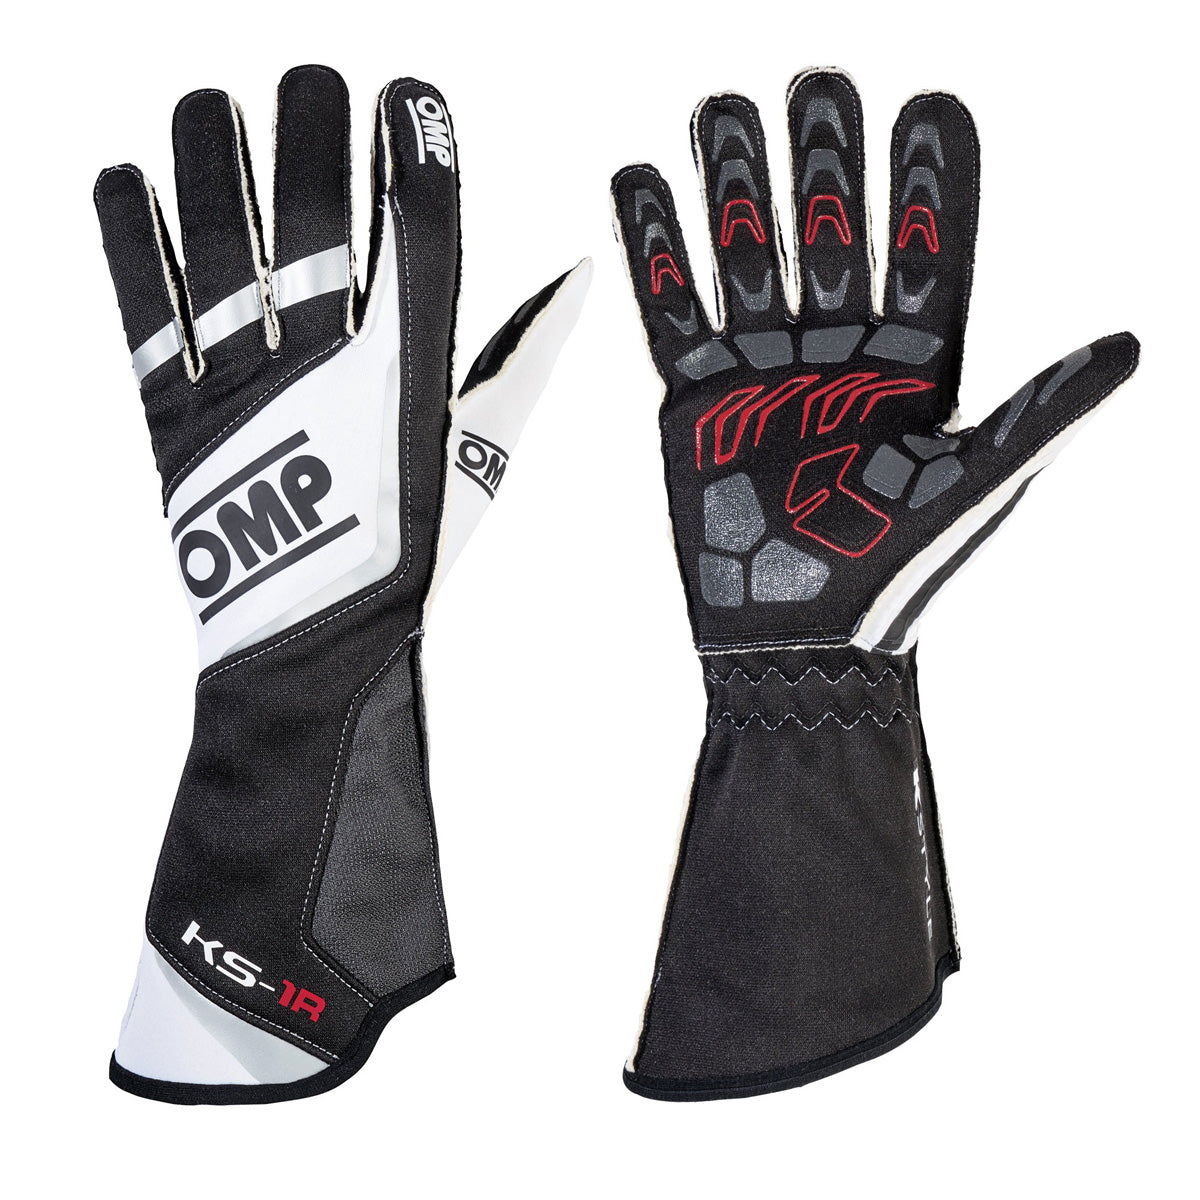 OMP KS-1R Karting Gloves